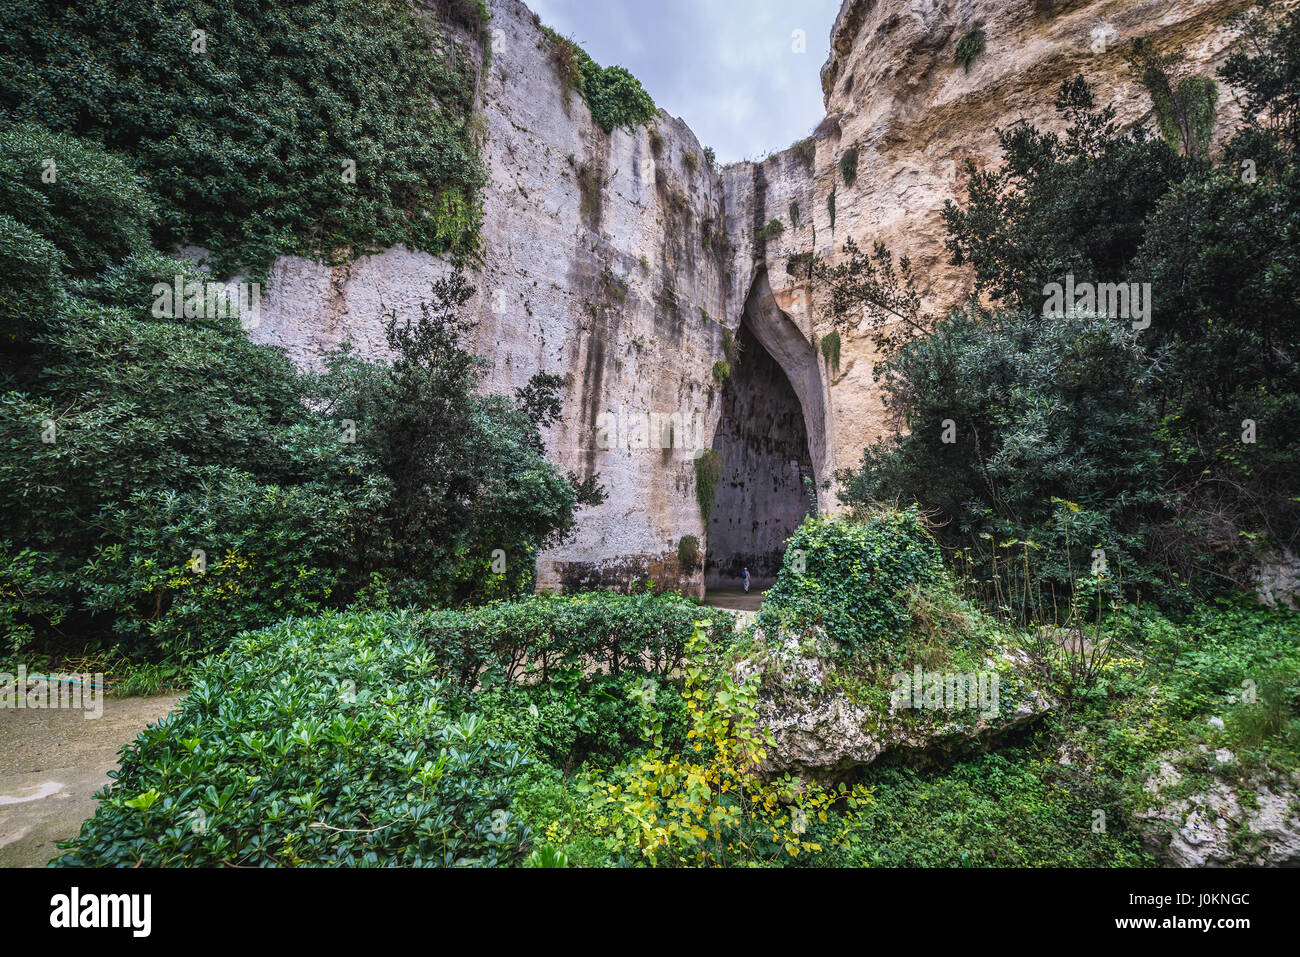 Orecchio di Dionisio grotta in Acquario tropicale antica cava, parte del Parco Archeologico della Neapolis nella città di Siracusa, Sicilia Isola, Italia Foto Stock